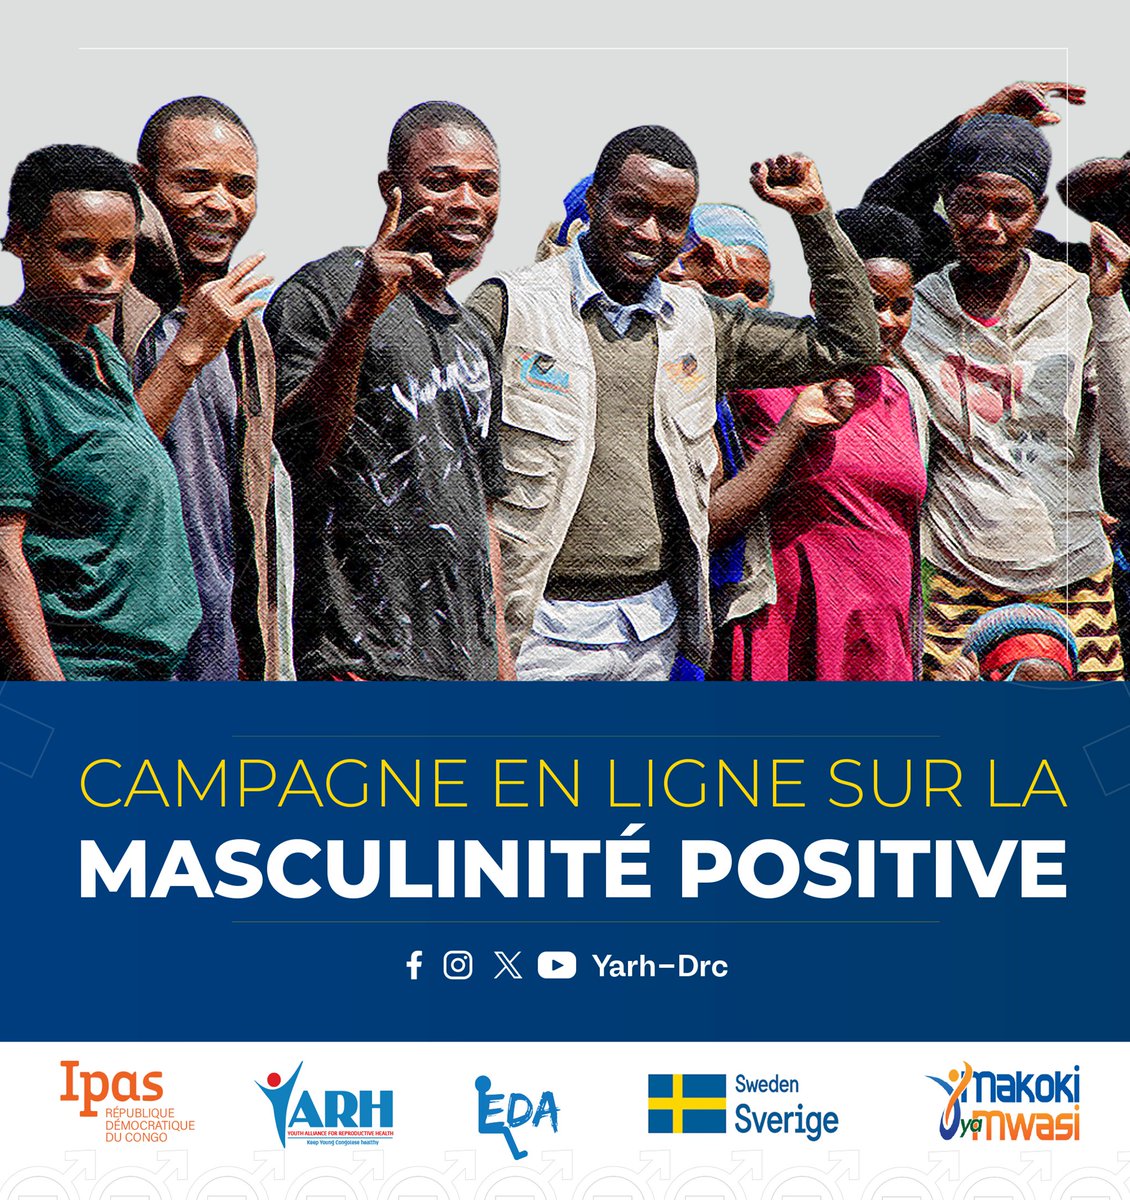 #MakokiYaMwasi: Aujourd'hui @yarhdrc lance une campagne en ligne sur la #MasculinitéPositive pour une durée de 10 jours.
Pendant ces 10 jours je nous invite à apprendre d'avantage sur les #DSSR qui sont des droits fondamentaux de la femme que nous devons promouvoir.